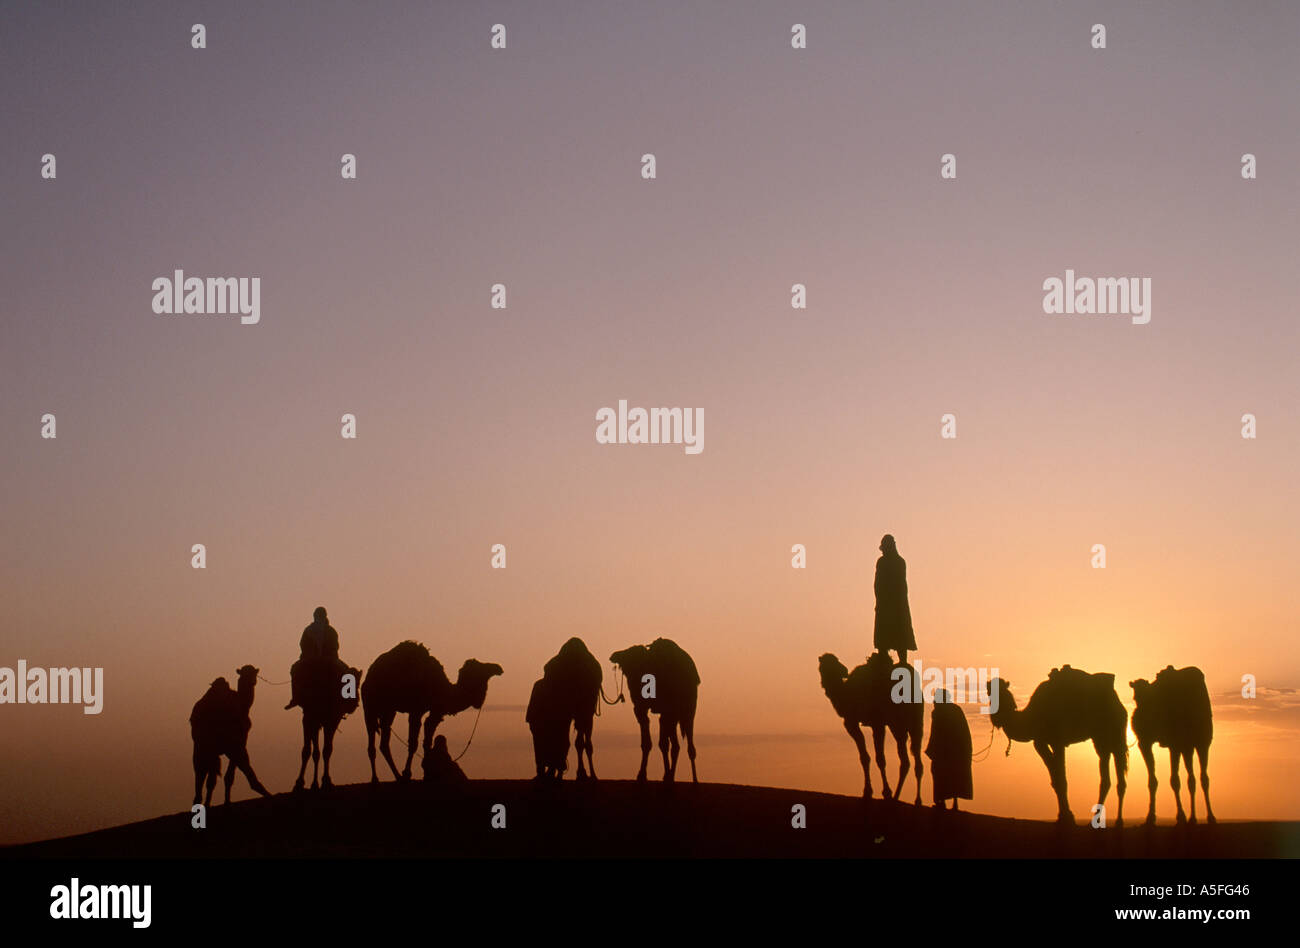 Les chameaux et les cavaliers bédouins au coucher du soleil, Douz, Sahara, Tunisie, Afrique du Nord Banque D'Images